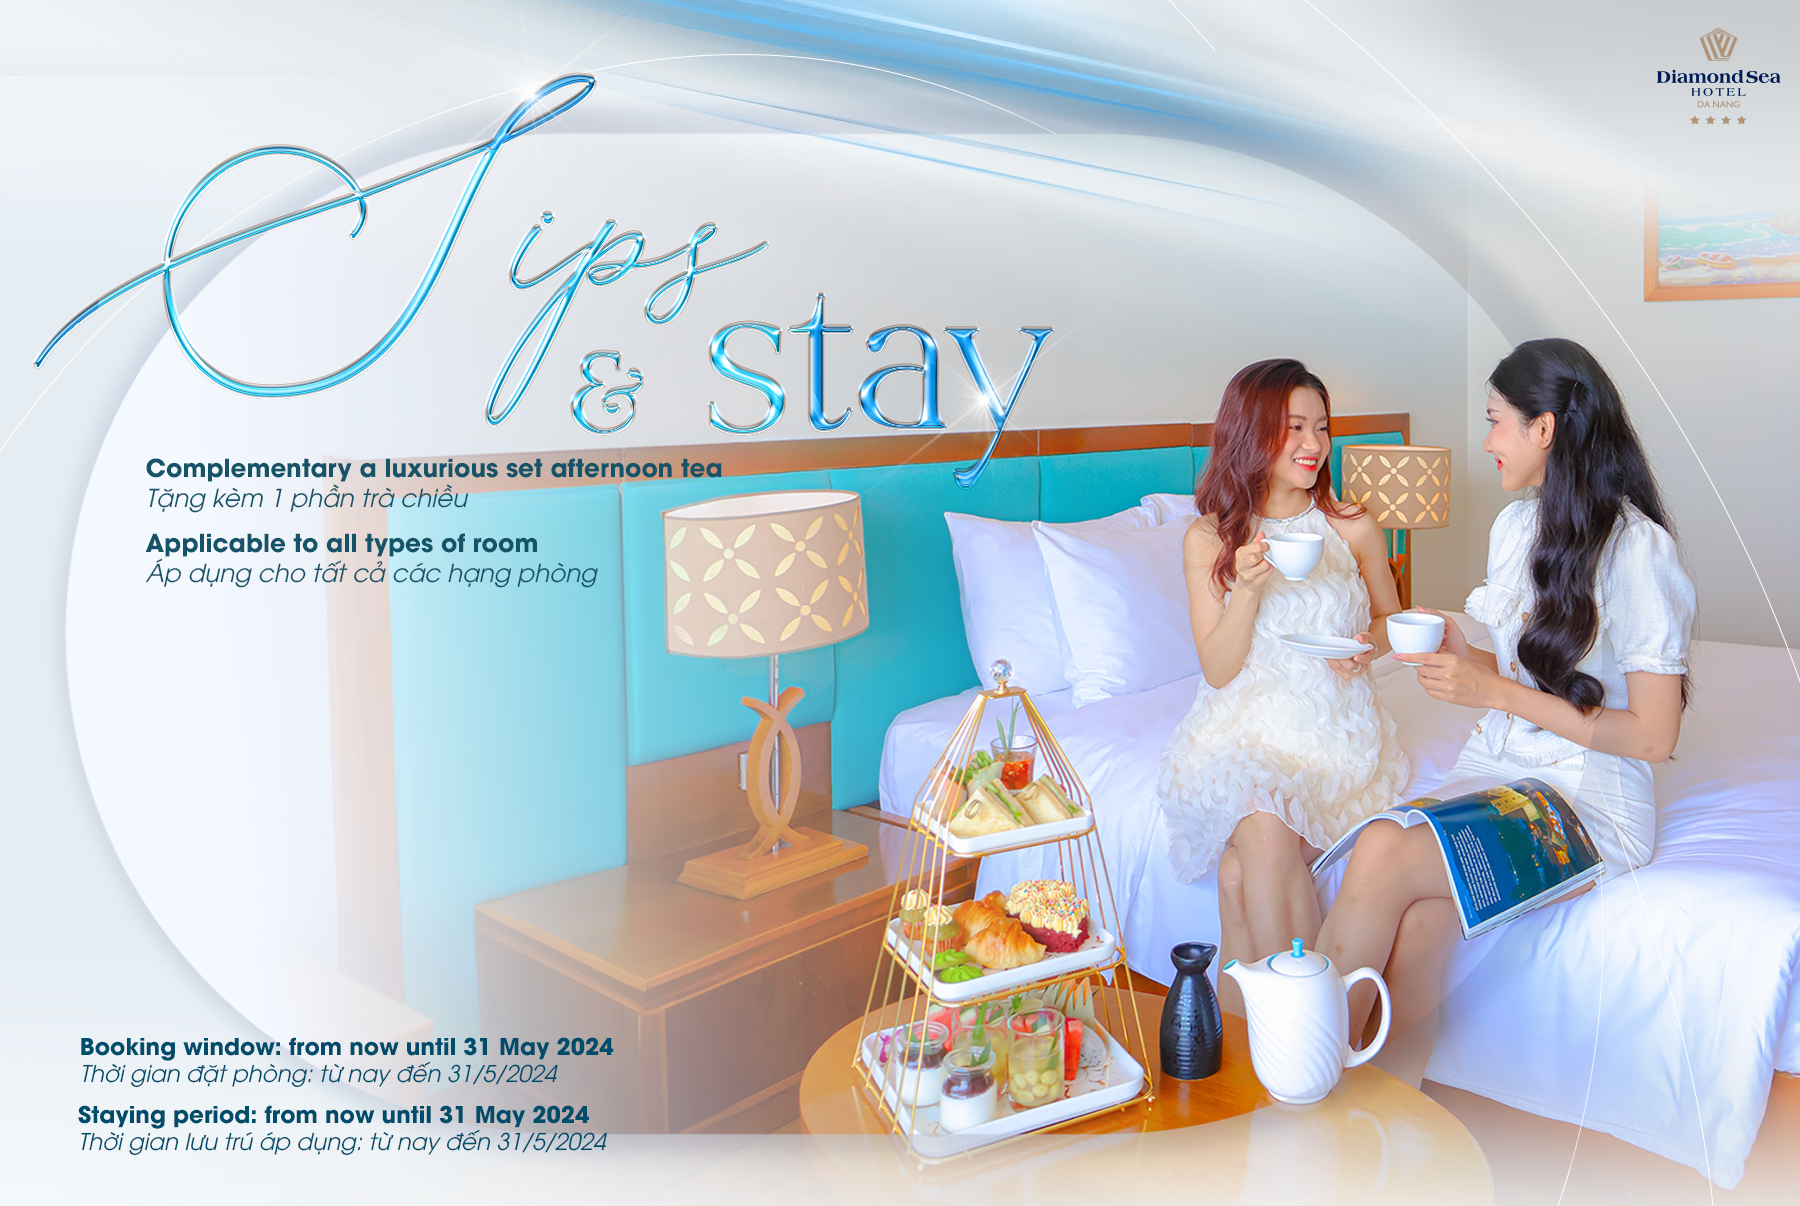 Kì nghỉ trong mơ tại khách sạn Đà Nẵng Diamond Sea với ‘Sips & Stay’